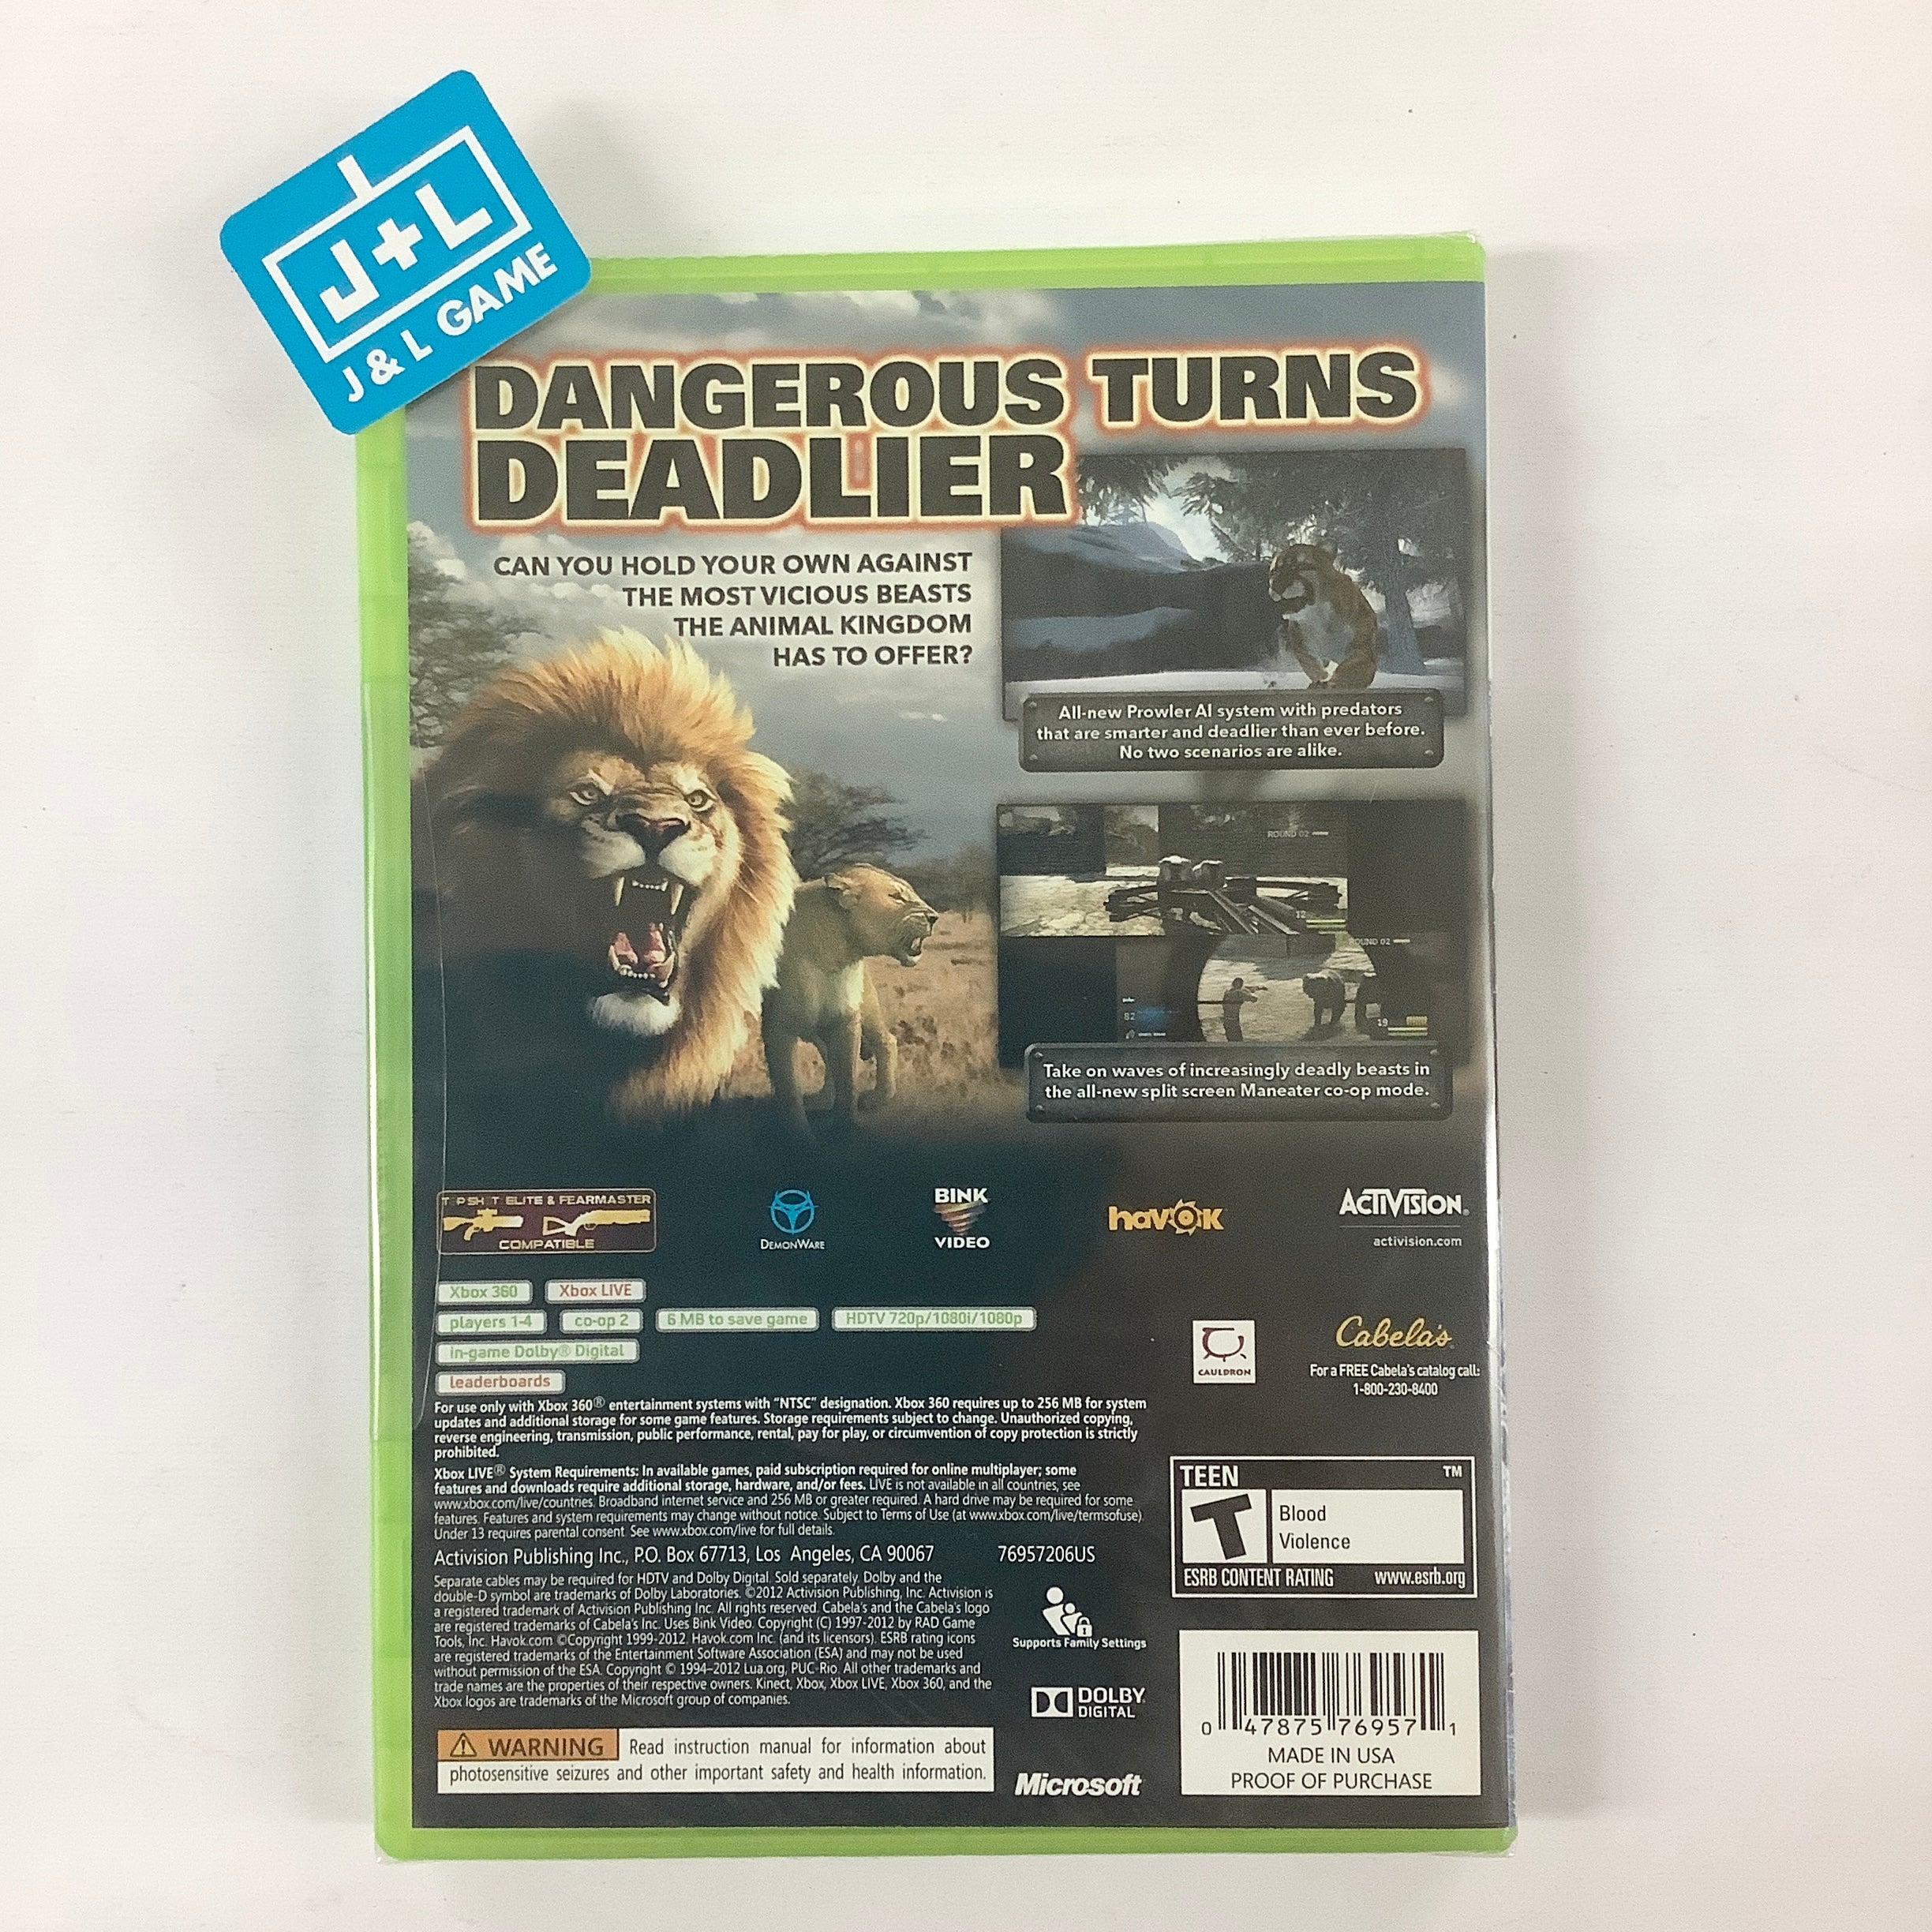 Cabela's Dangerous Hunts 2013 - Xbox 360 Video Games Activision   